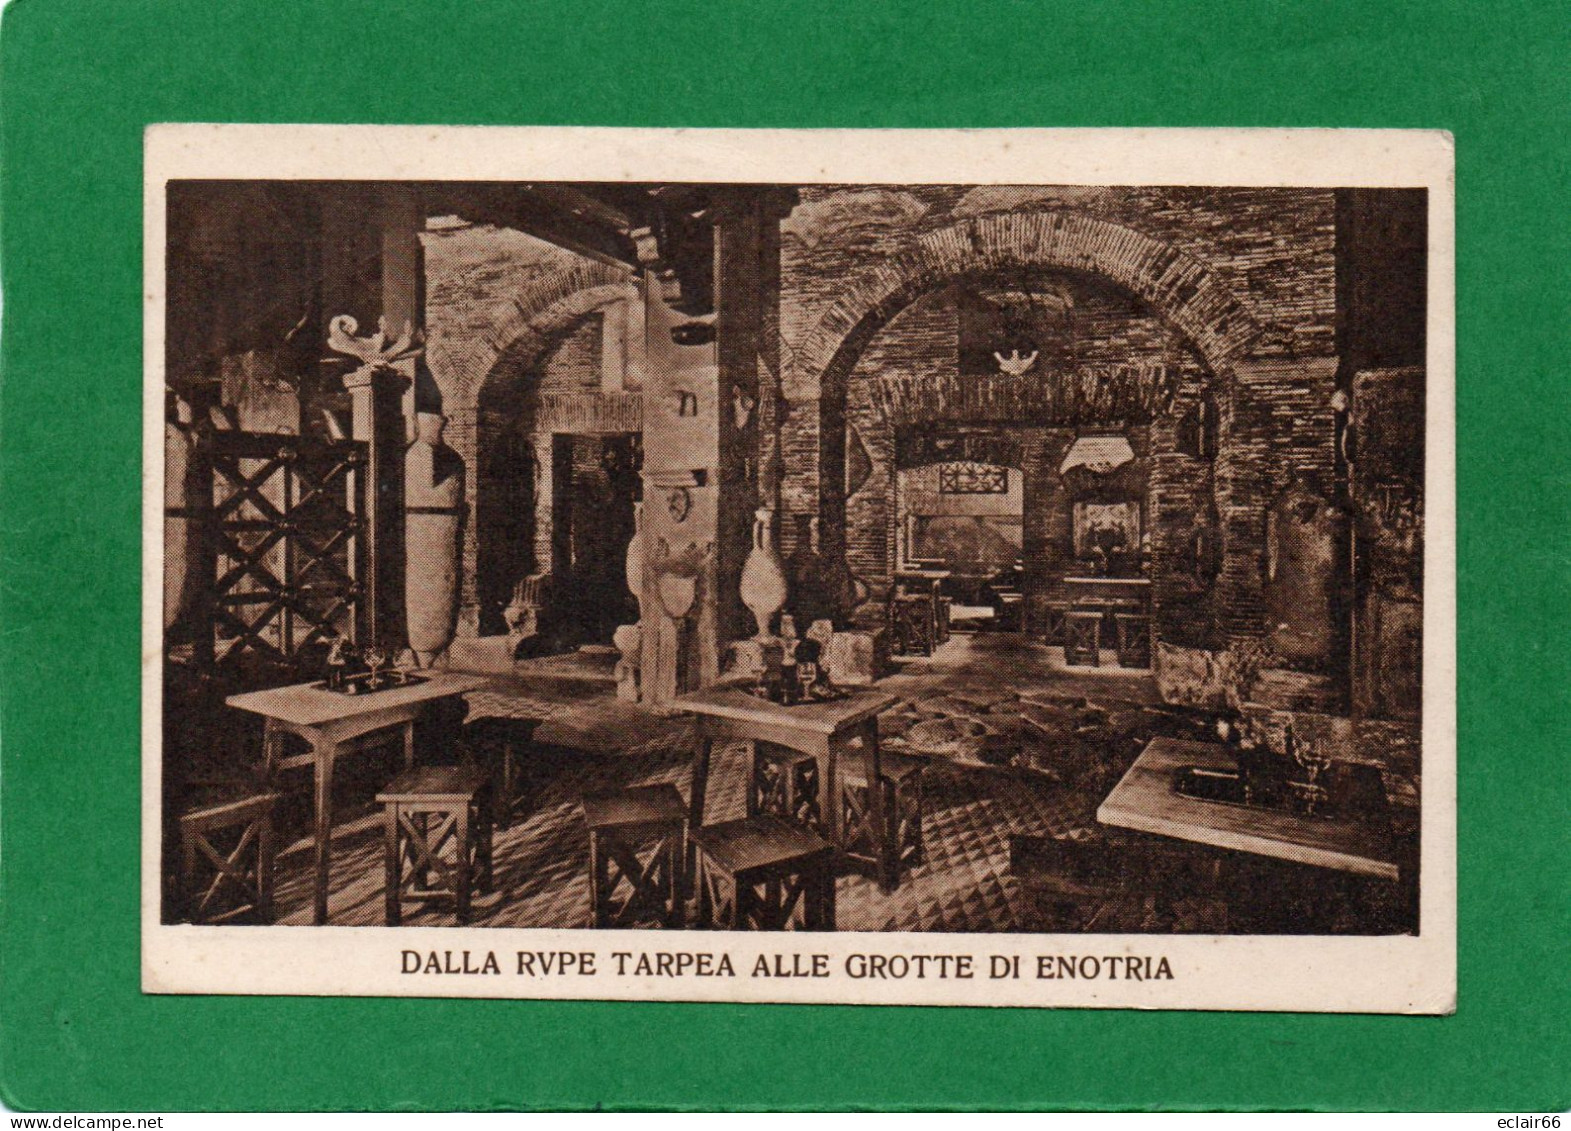 Dalla Rupe Tarpea Alle Grotte Di Enotria” Roma Via Vittorio Veneto N°13 – Prop. Luigi Falcioni – Foto Vasari  Impeccable - Cafes, Hotels & Restaurants